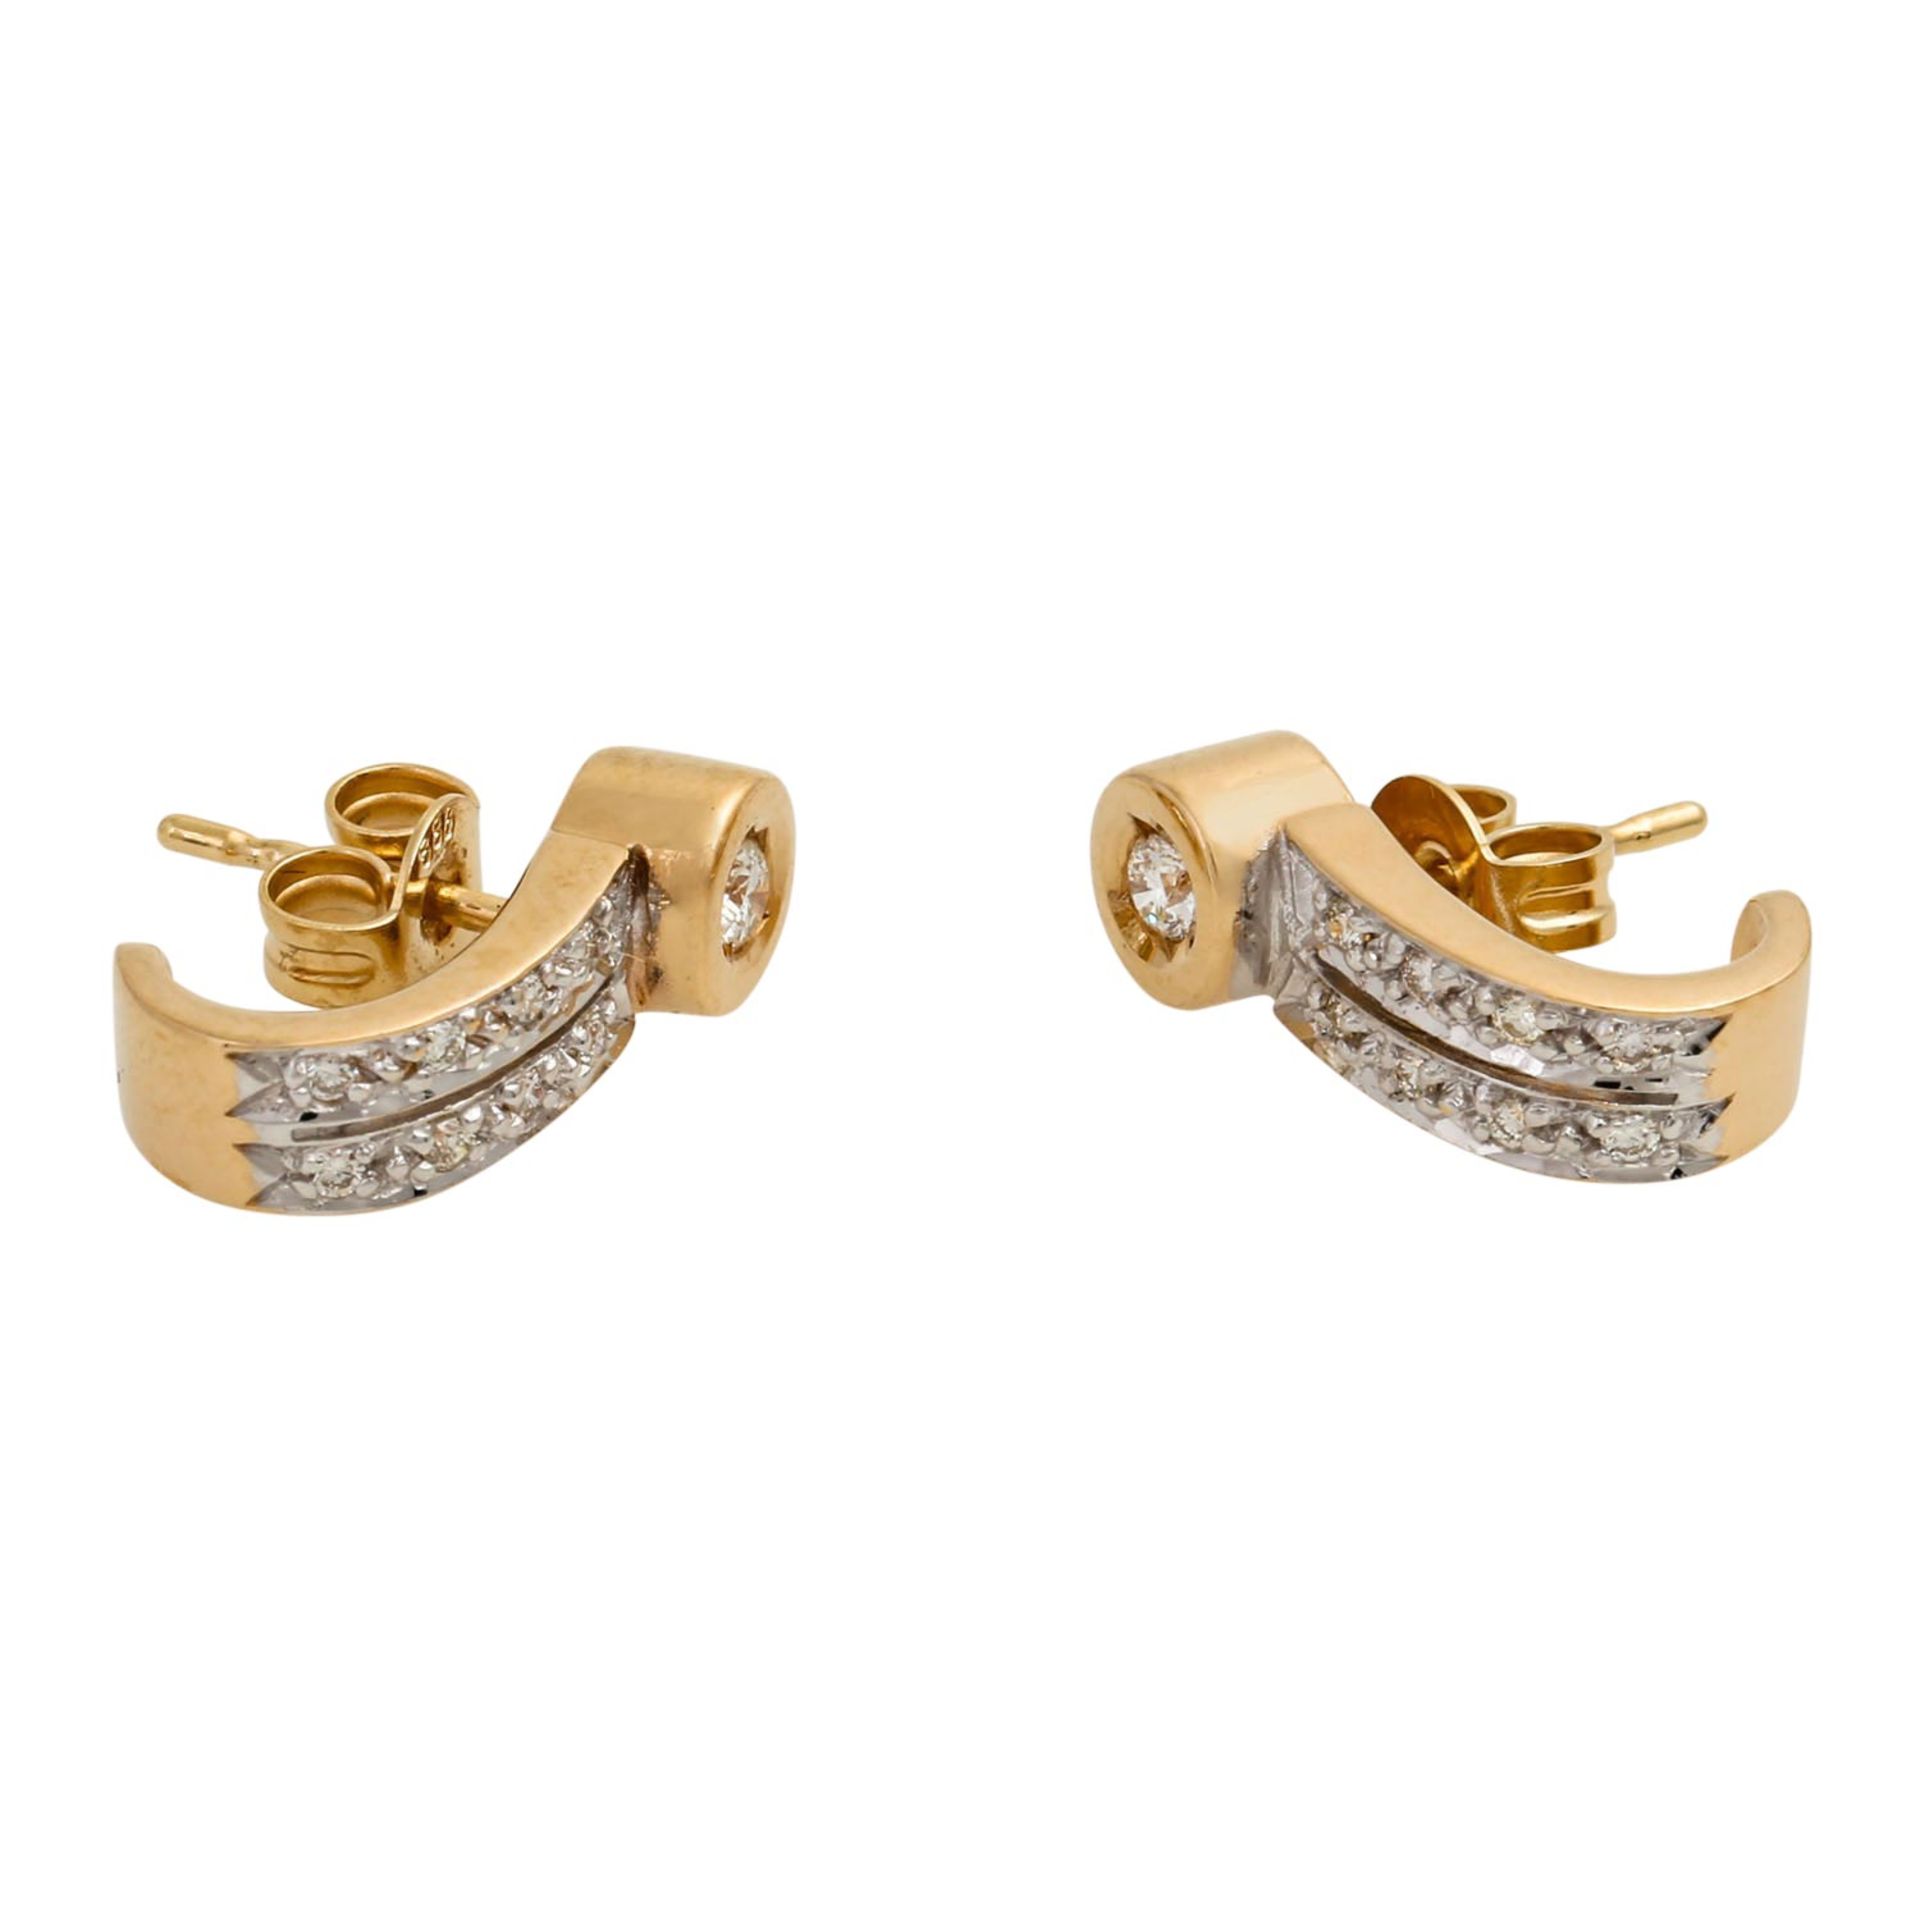 Ring und Ohrringe mit Brillanten von zus. ca. 0,40 ct, gute Reinheit, niedere Farbe, G - Bild 3 aus 9